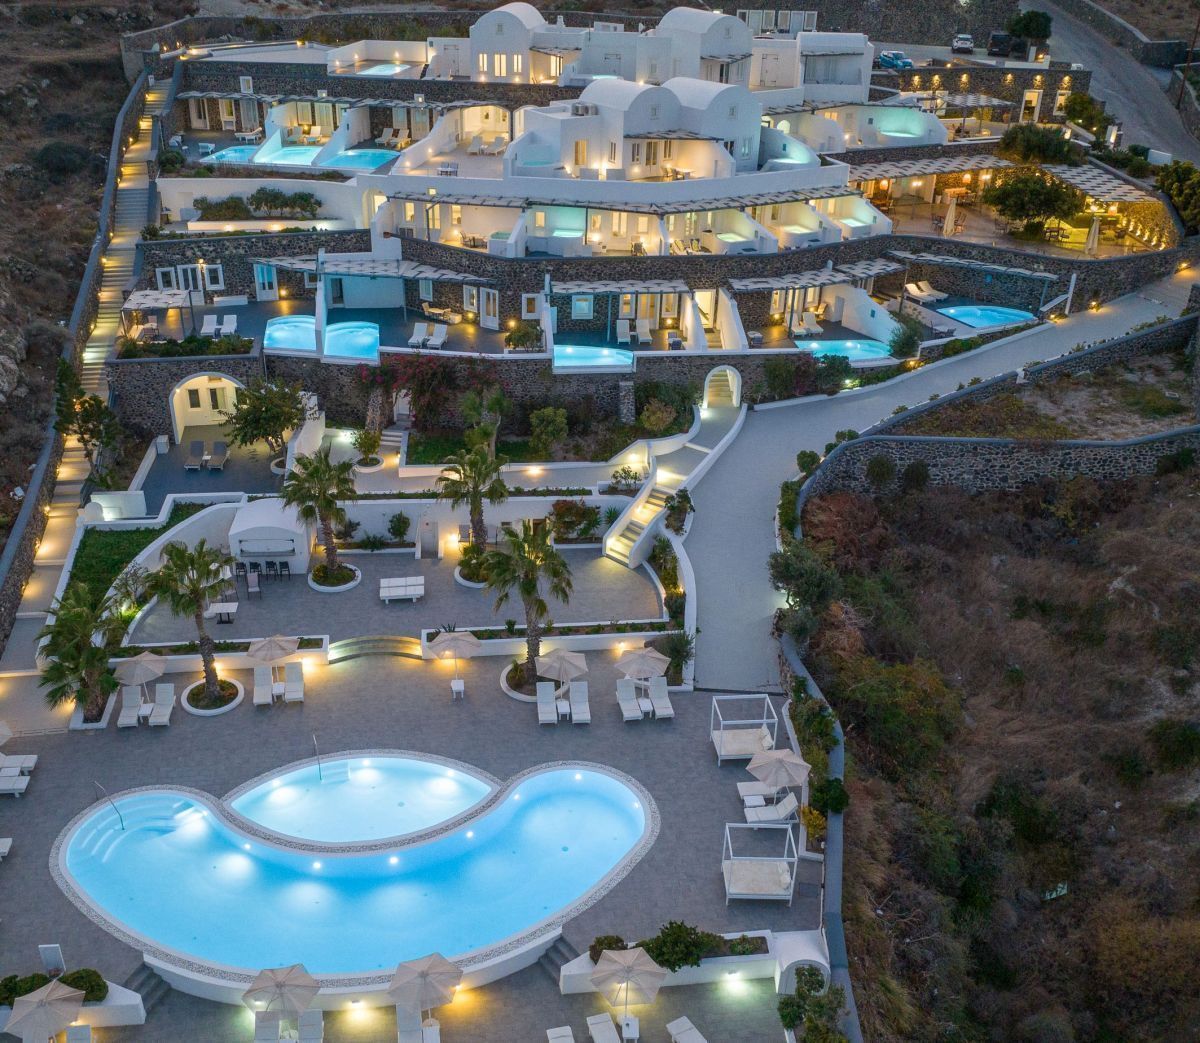 Amber Light Villas, Santorini. Photo source: Aqua Vista Hotels / © VisualStoryteller